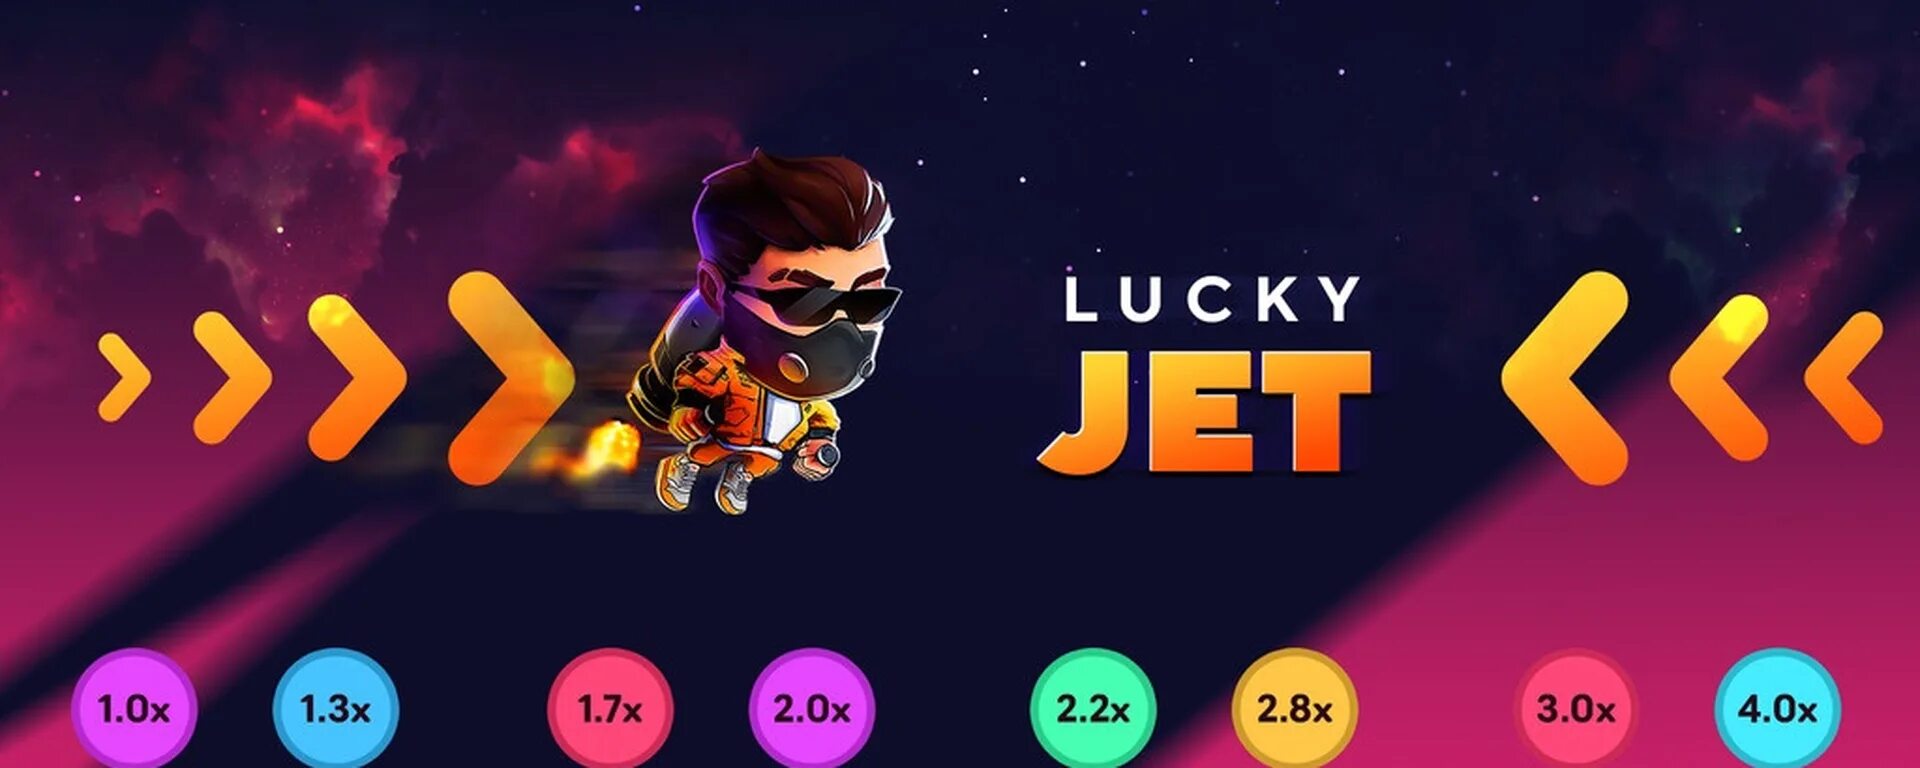 Софт на лаки джет lucky jetone info. Lucky Jet 1win. Lucky Jet игра. Lucky Jet лаки Джет. Ван вин Lucky Jet.